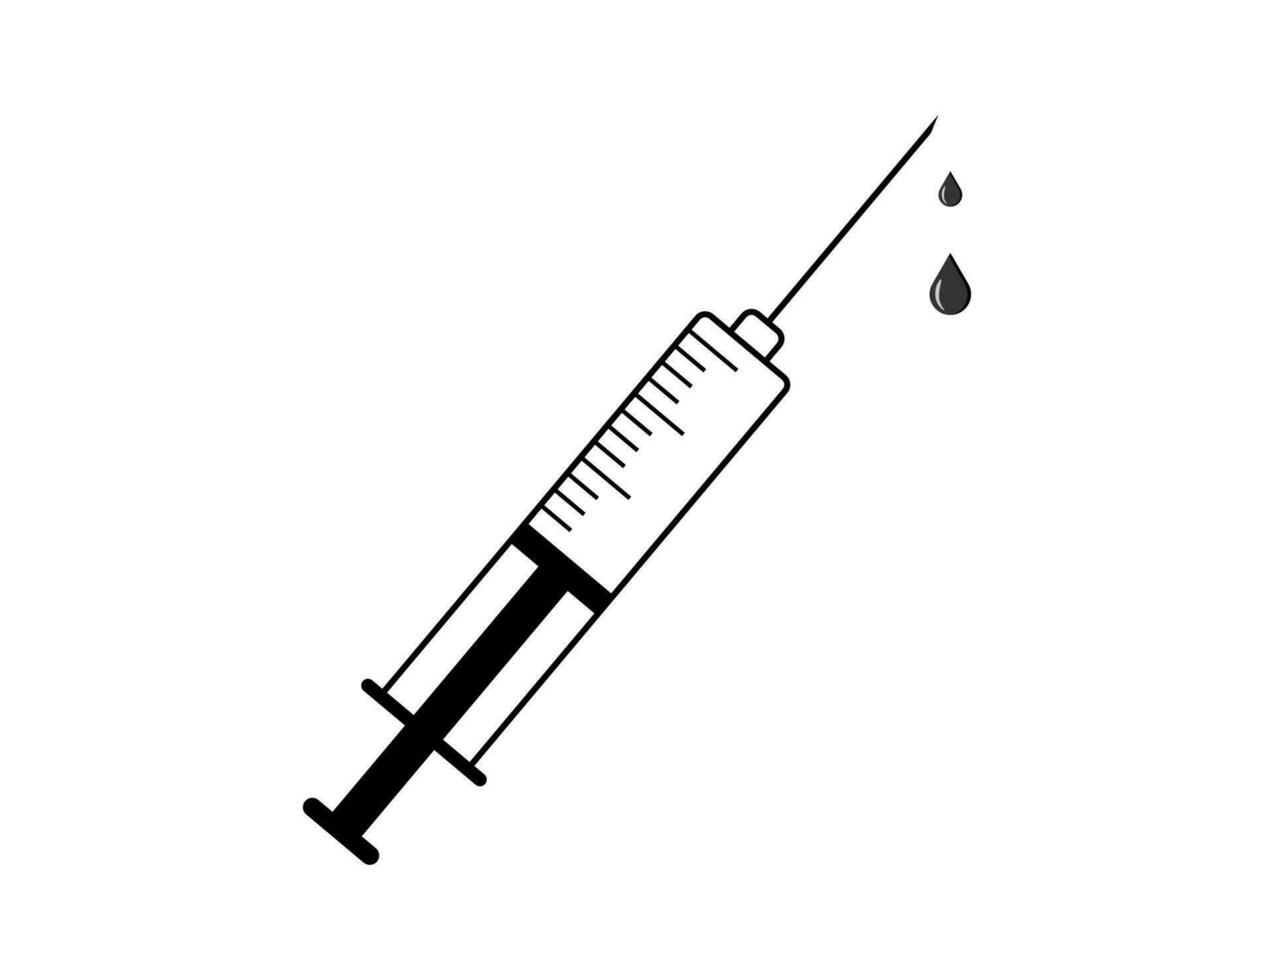 seringa ícone vetor ilustração. médicos frequentemente usar seringas para evita e tratar maligno doenças.